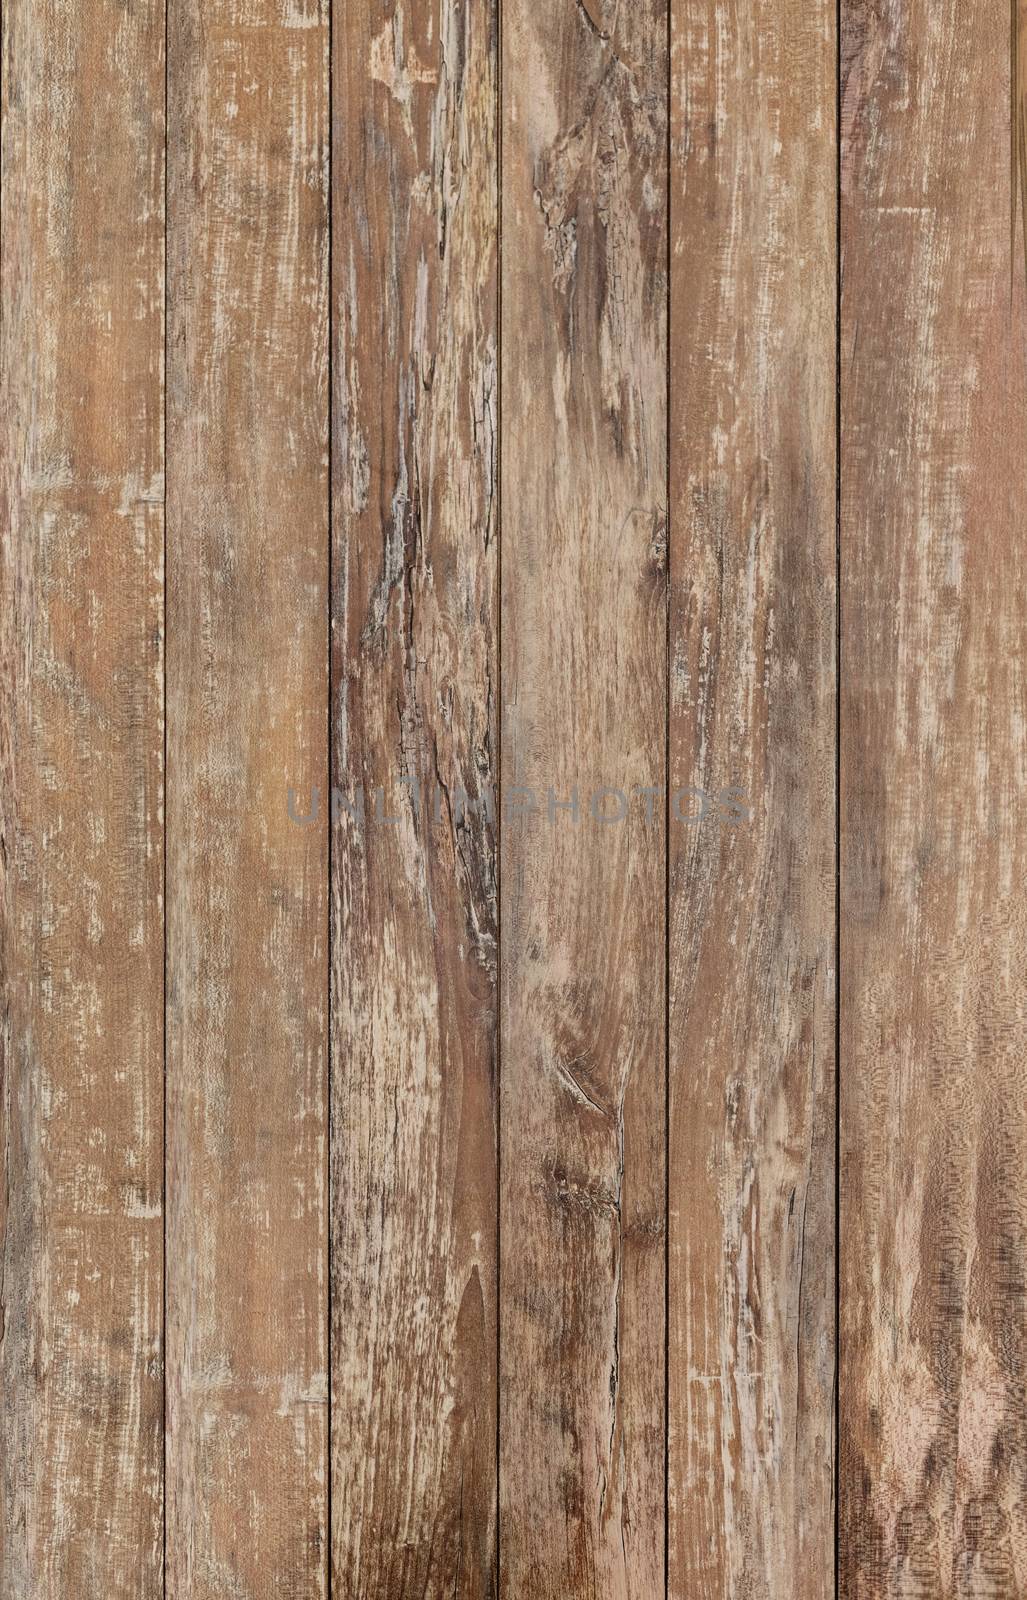 wooden floor or wall by dolgachov